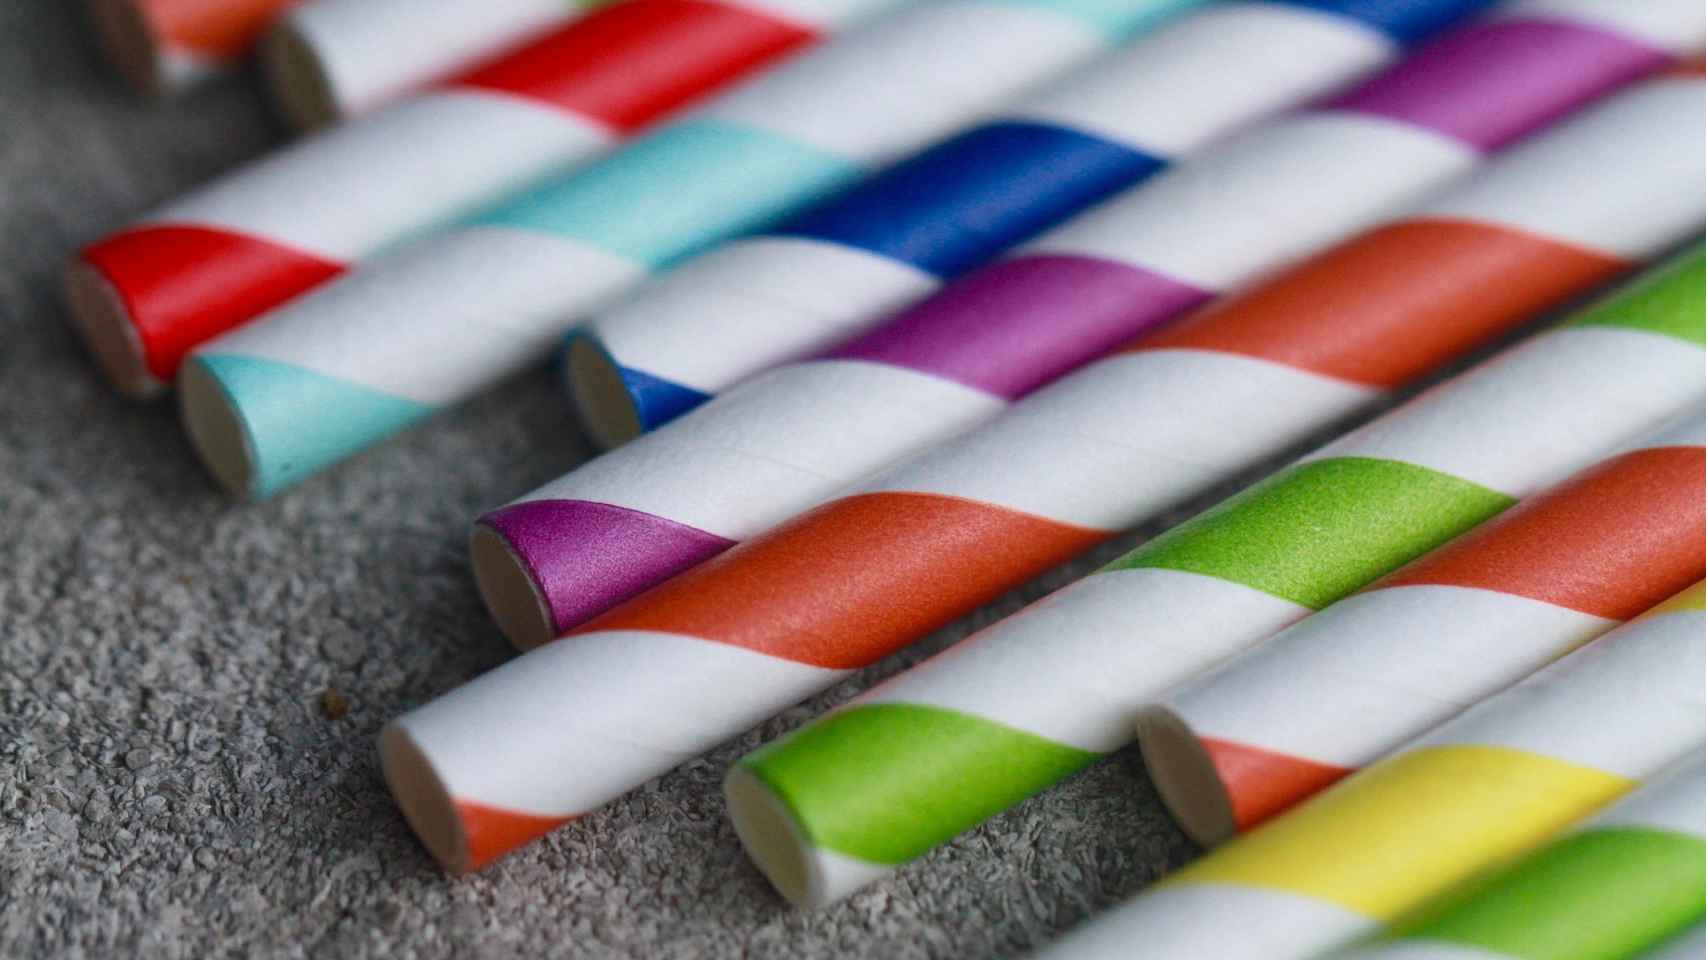 Las pajitas de papel también contaminan. ¿Y ahora qué?